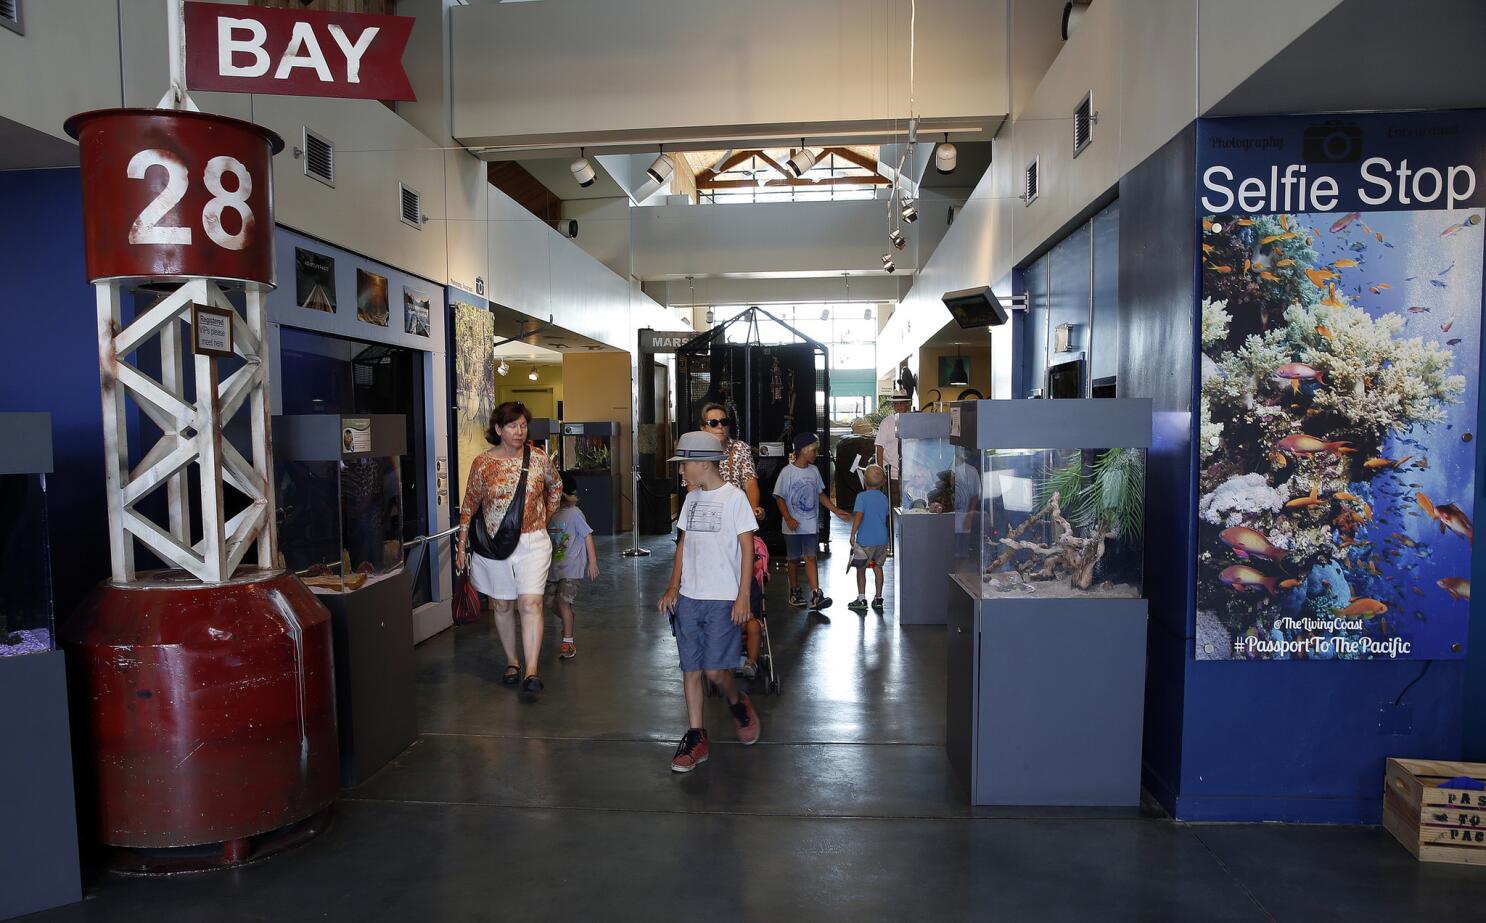 El parque de Mission Bay estrena elaborada zona de juegos para niños y área  de ejercicio para adultos - San Diego Union-Tribune en Español